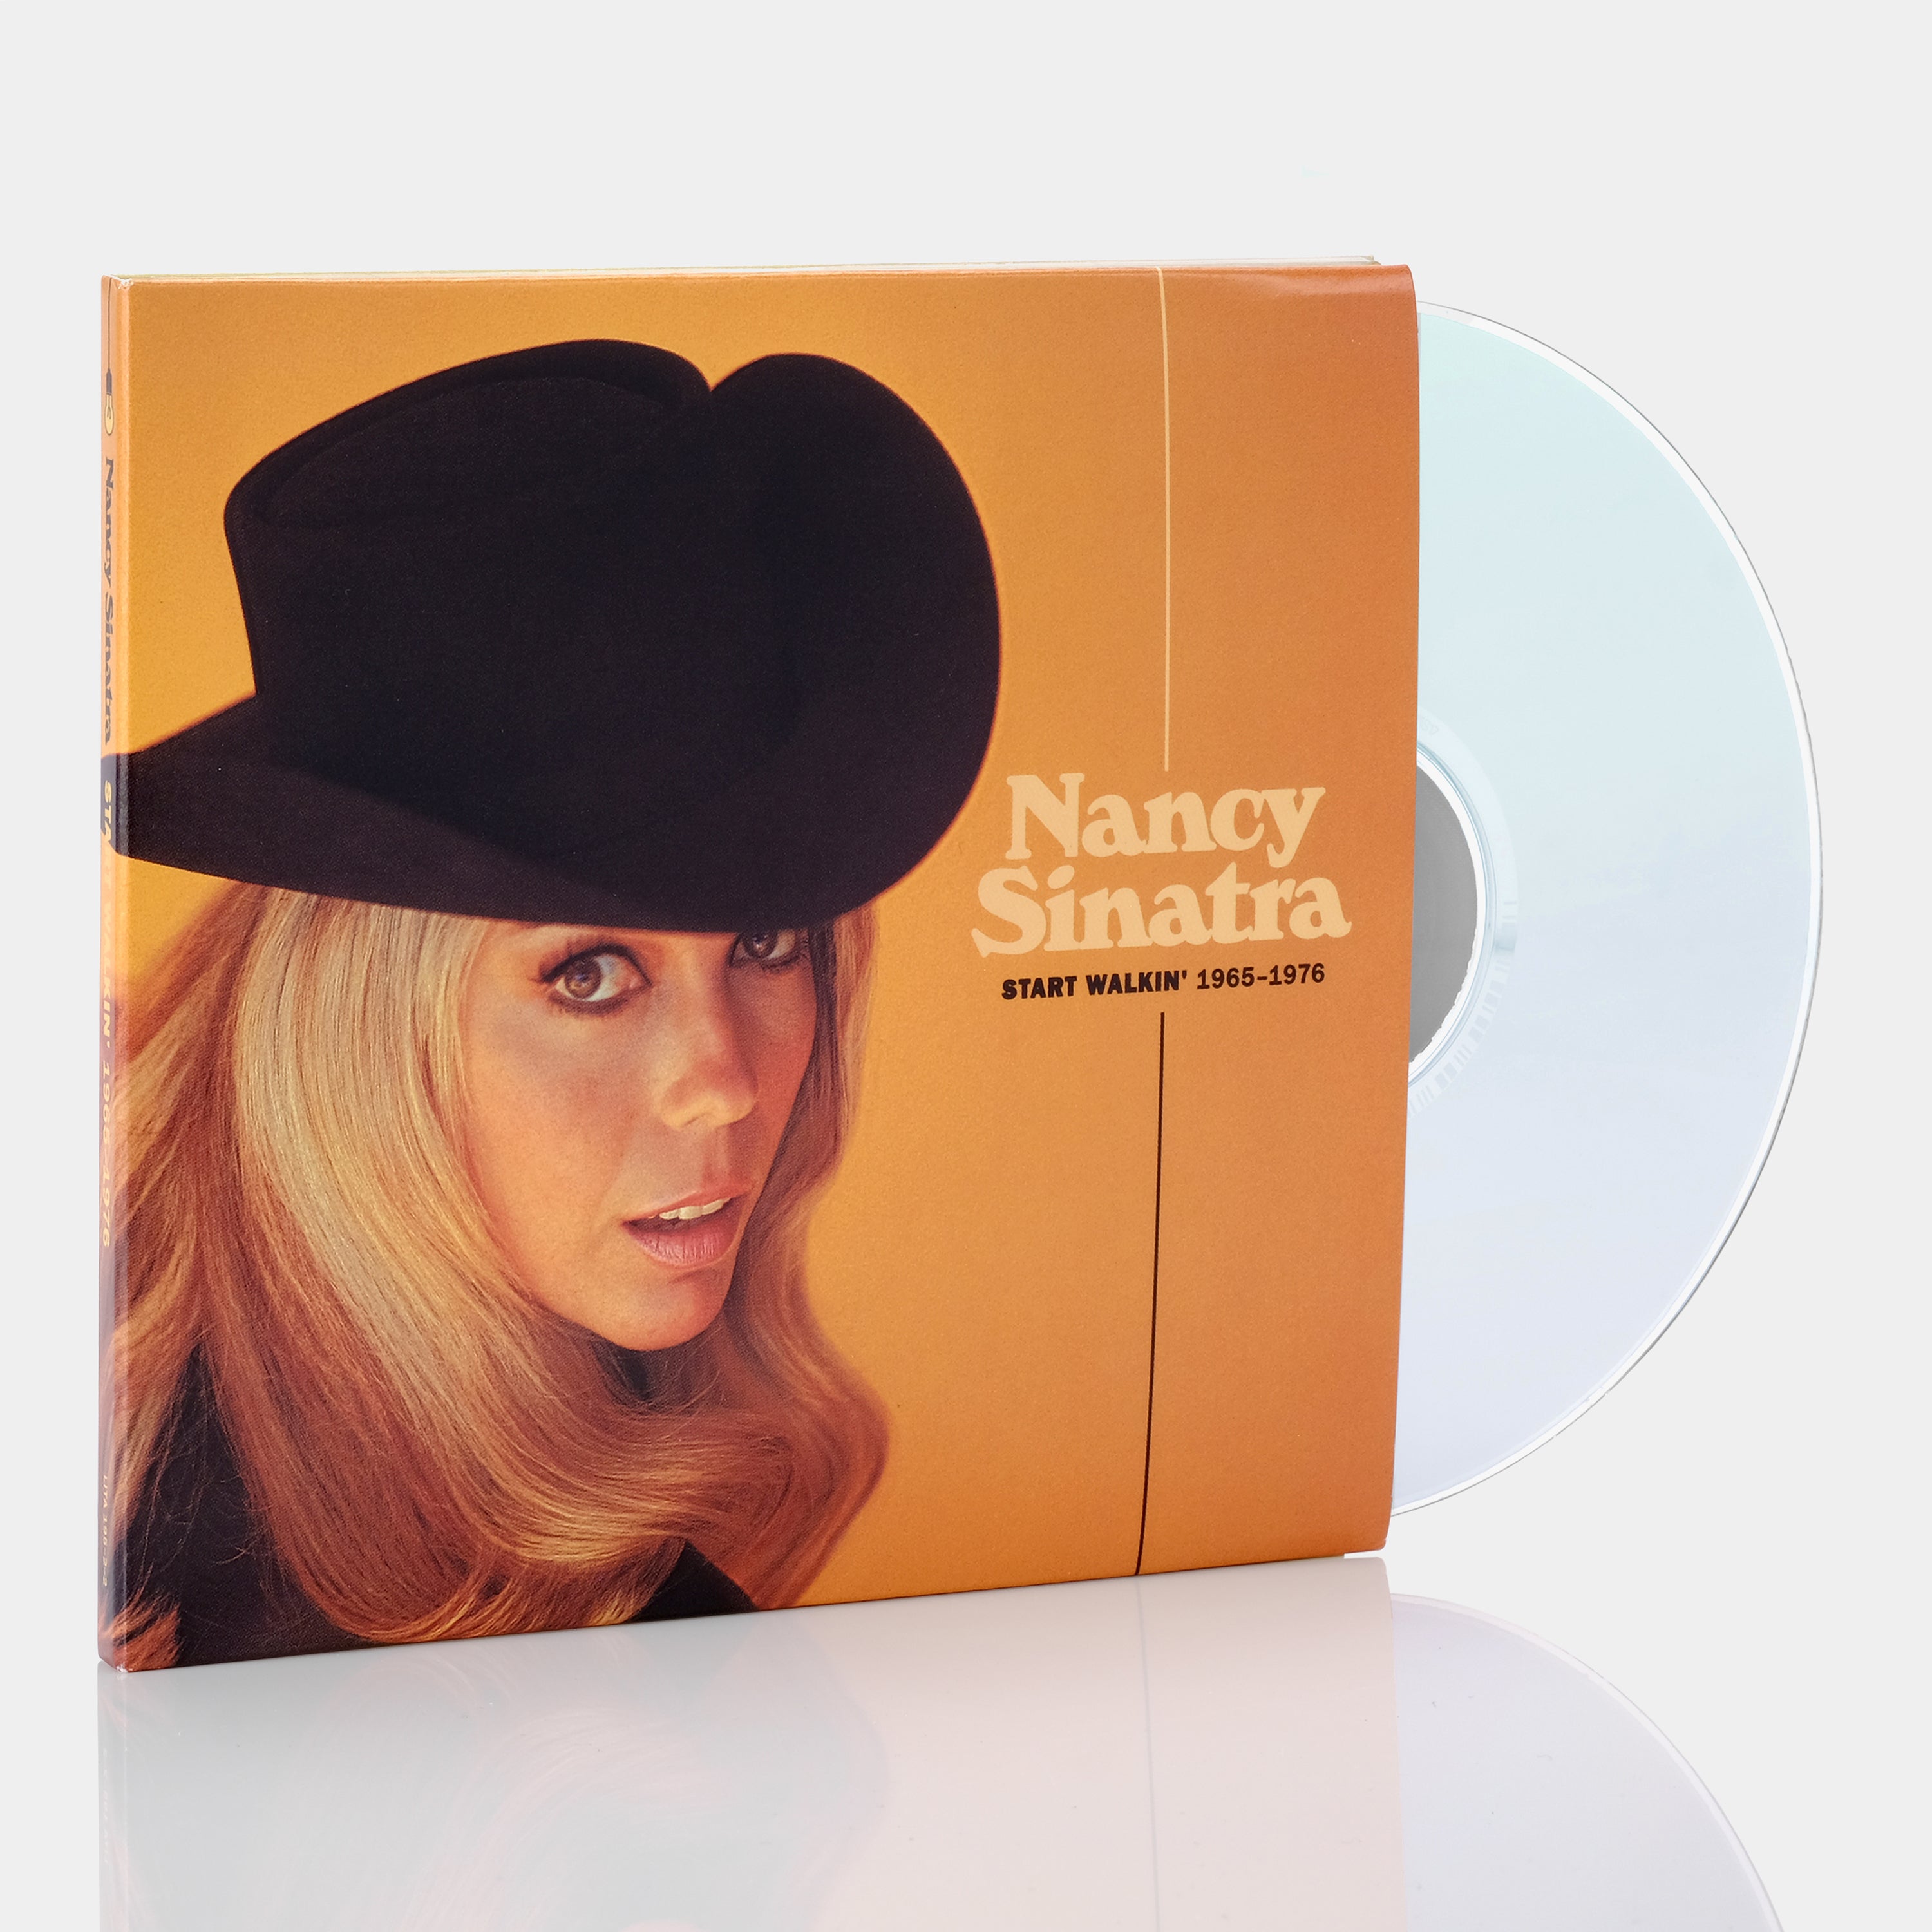 Nancy Sinatra - Start Walkin' 1965-1976 CD